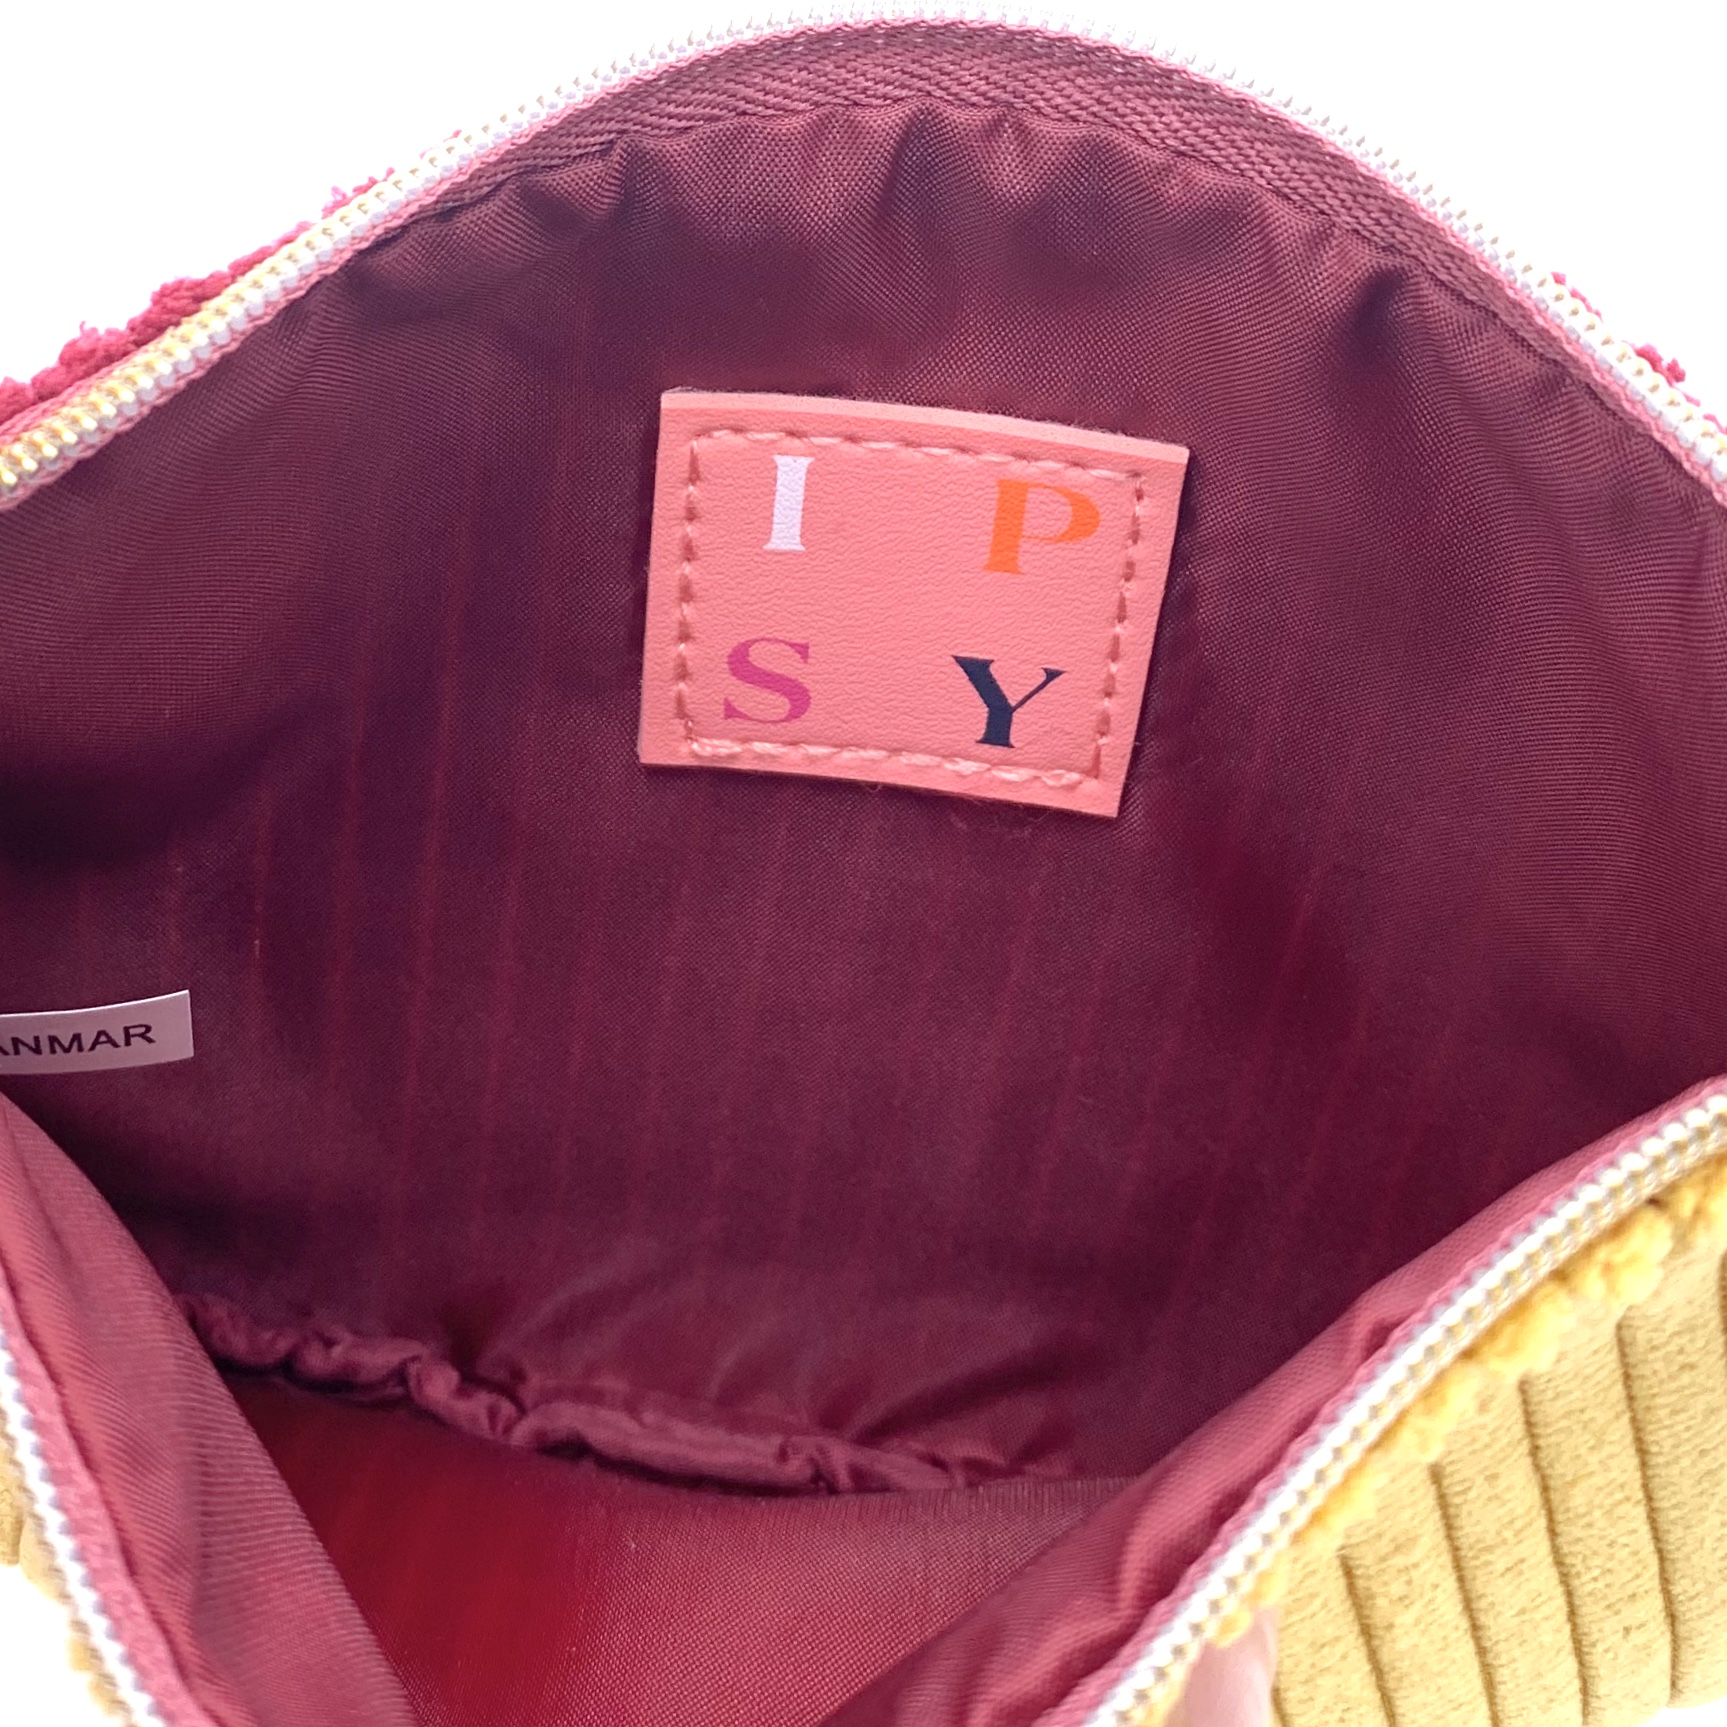 Bag Inside for Ipsy Glam Bag September 2020